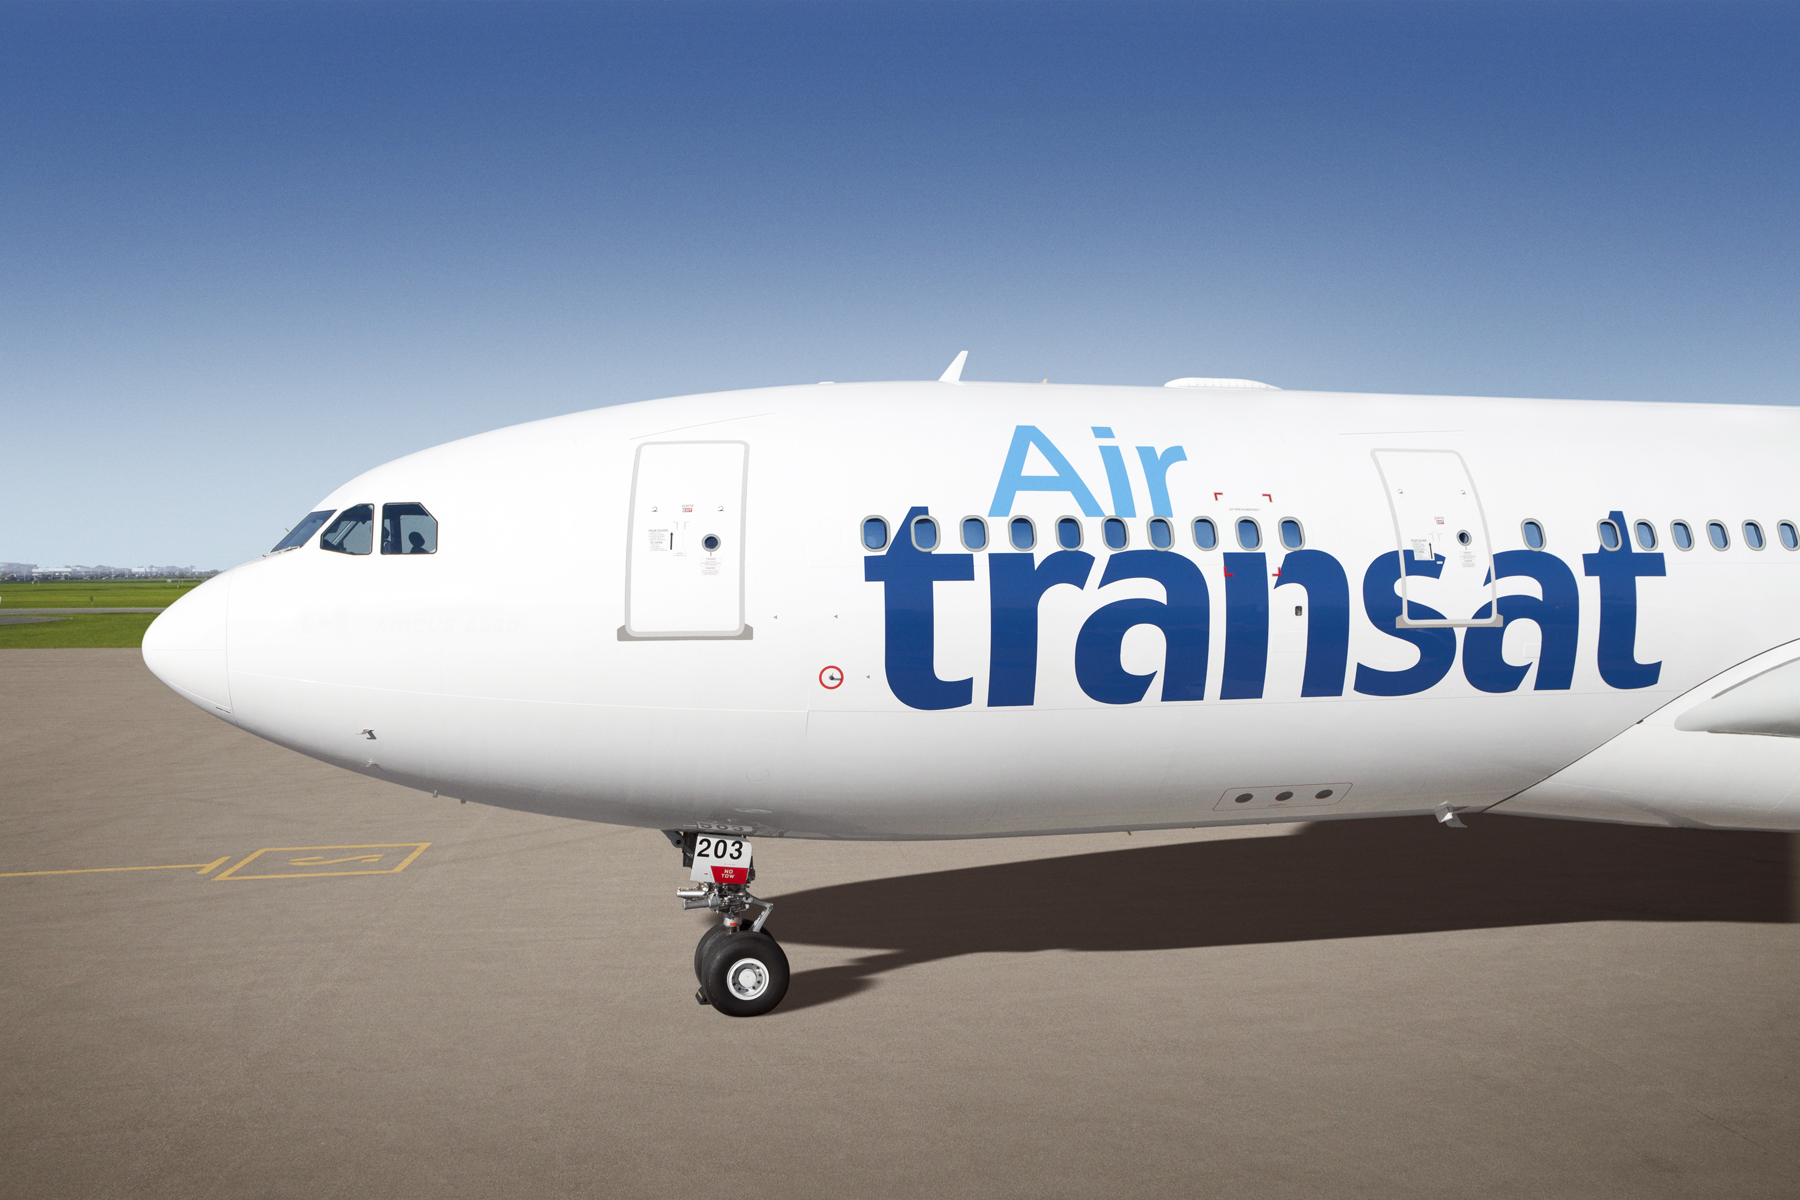 Con Air Transat promozioni speciali per volare a Toronto